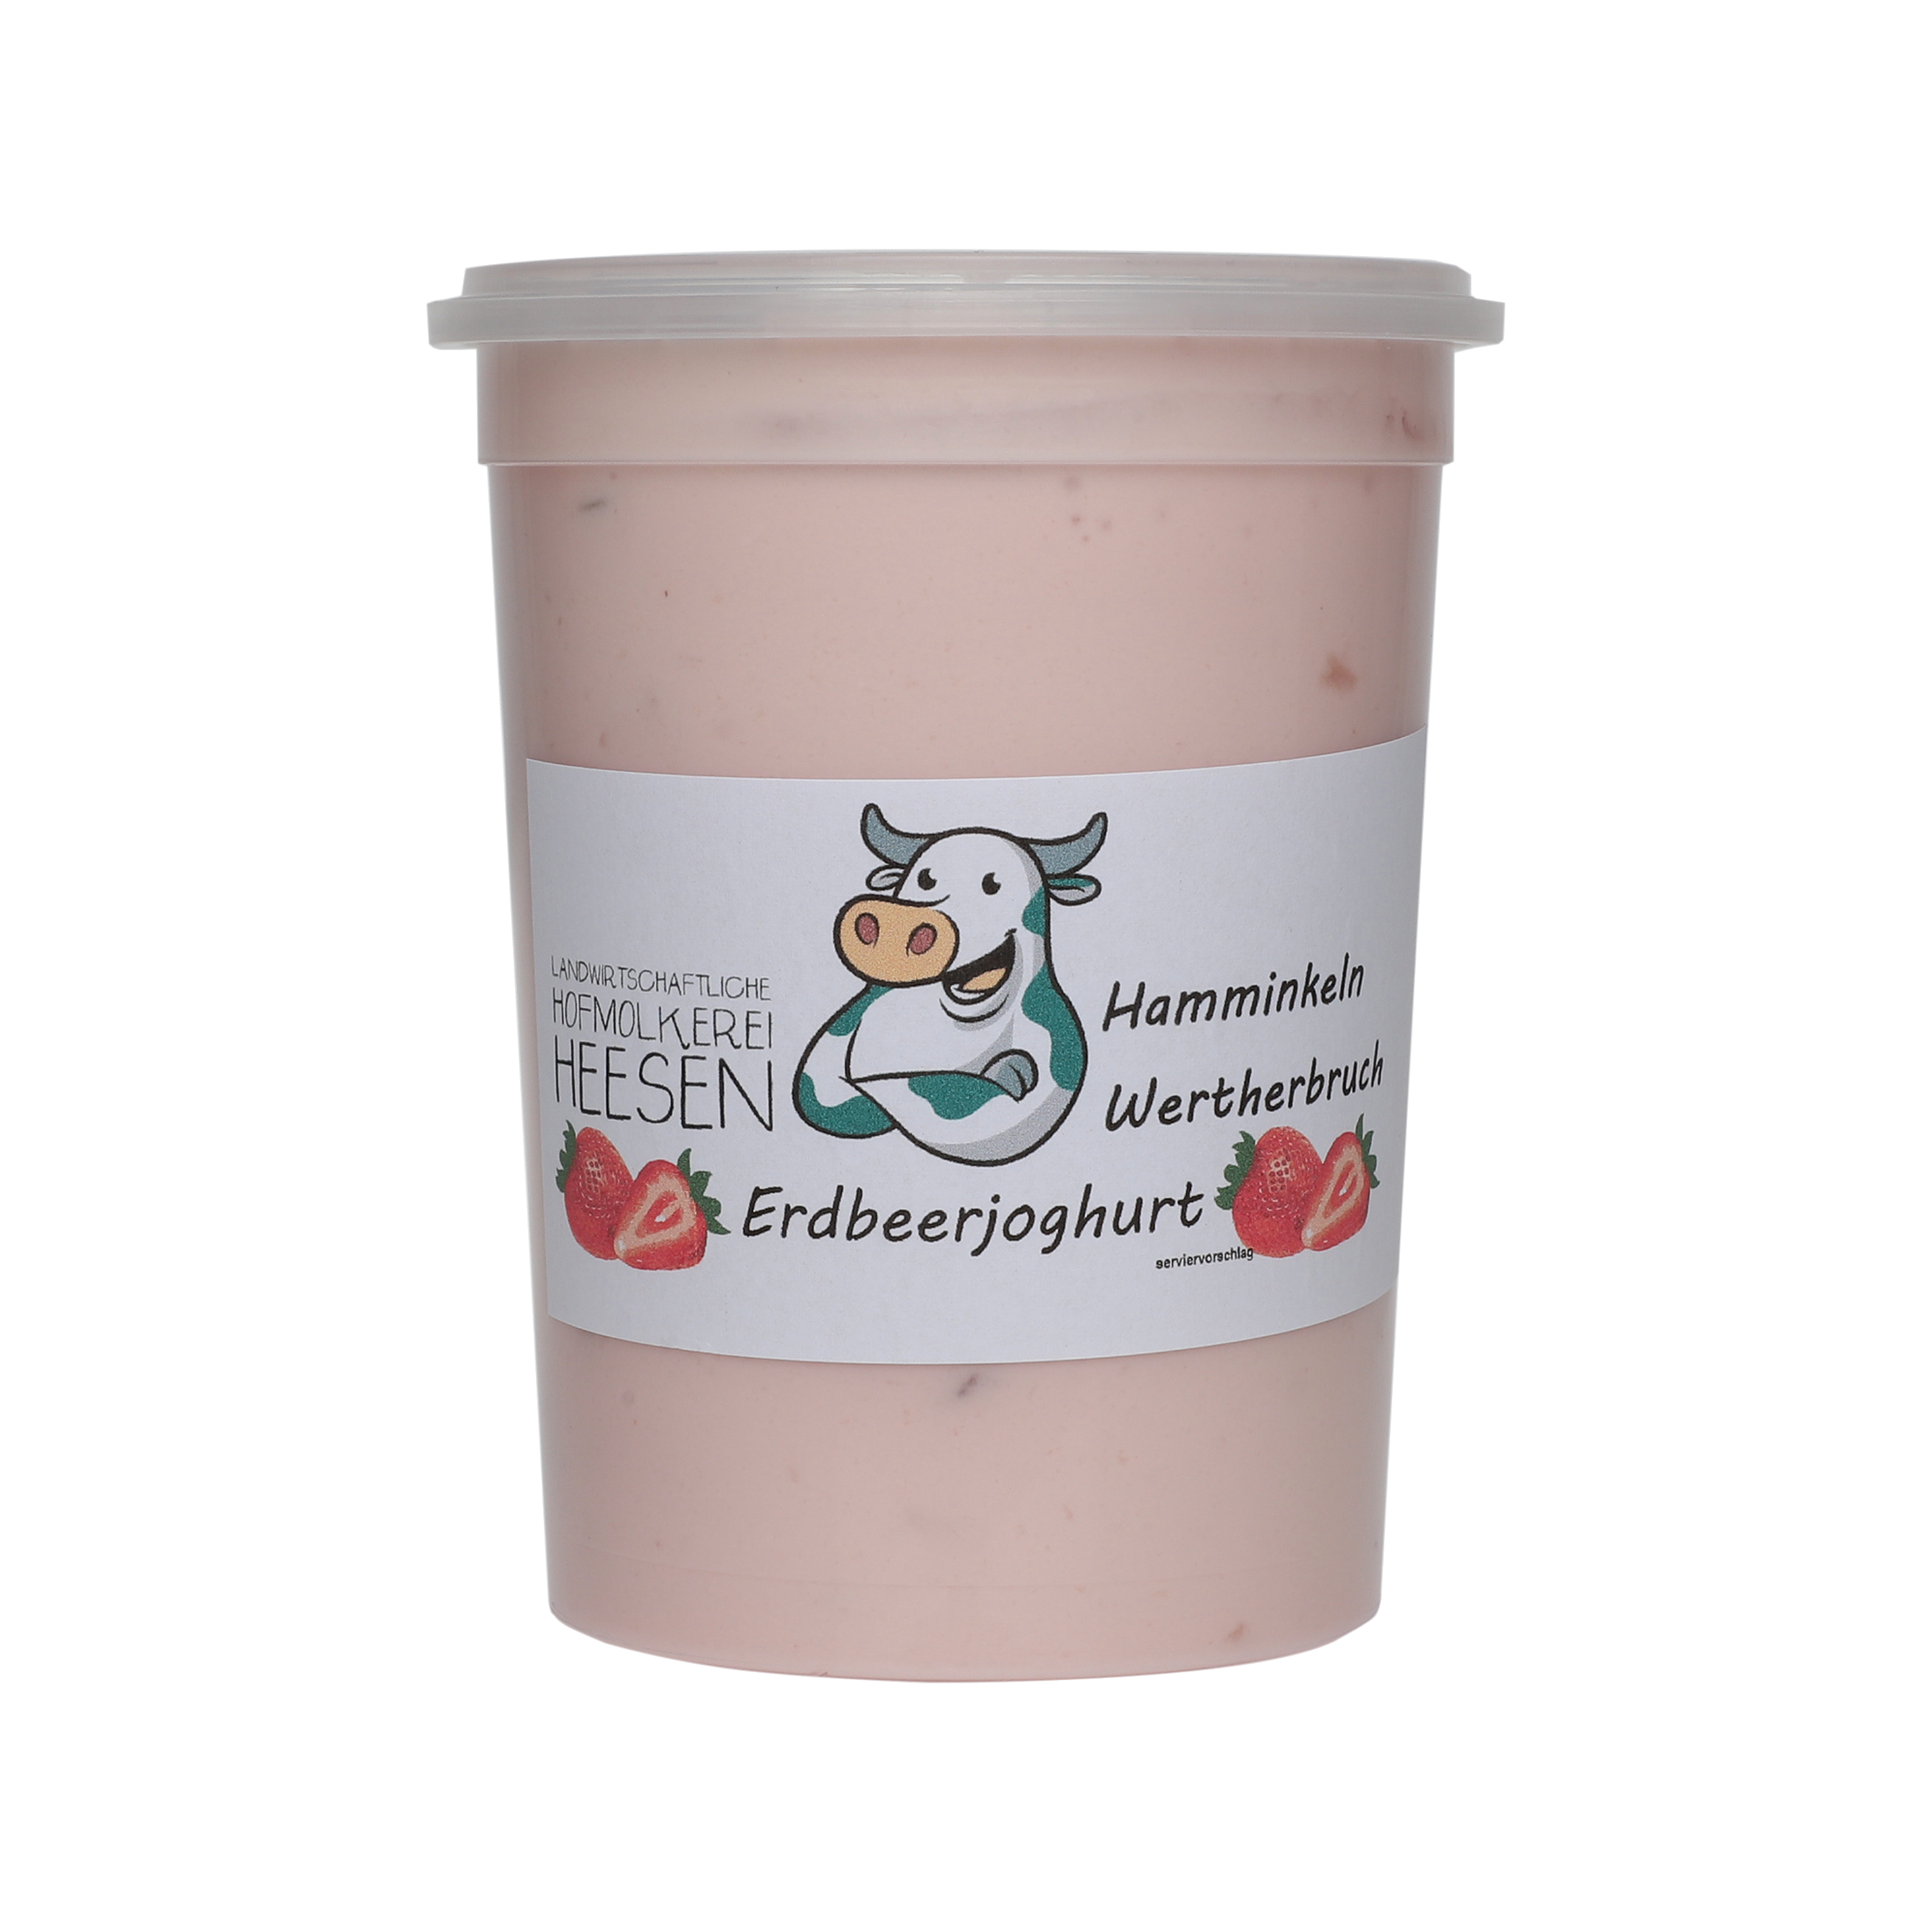 24_Milchhof Heesen 500g Erdbeer Joghurt neu